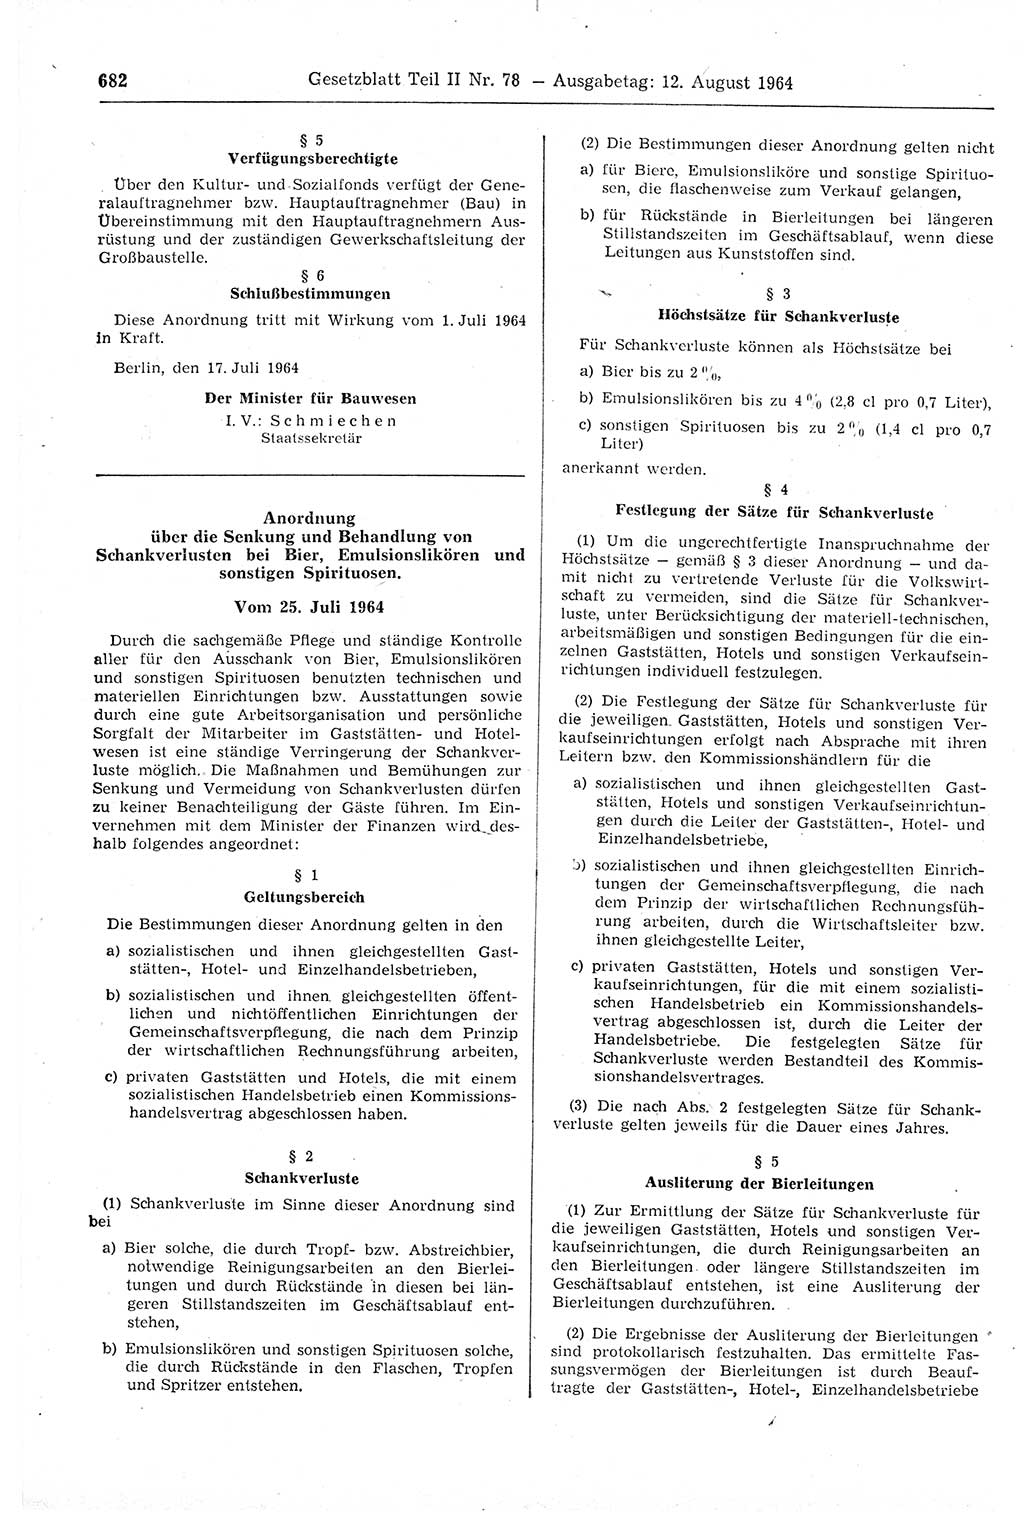 Gesetzblatt (GBl.) der Deutschen Demokratischen Republik (DDR) Teil ⅠⅠ 1964, Seite 682 (GBl. DDR ⅠⅠ 1964, S. 682)